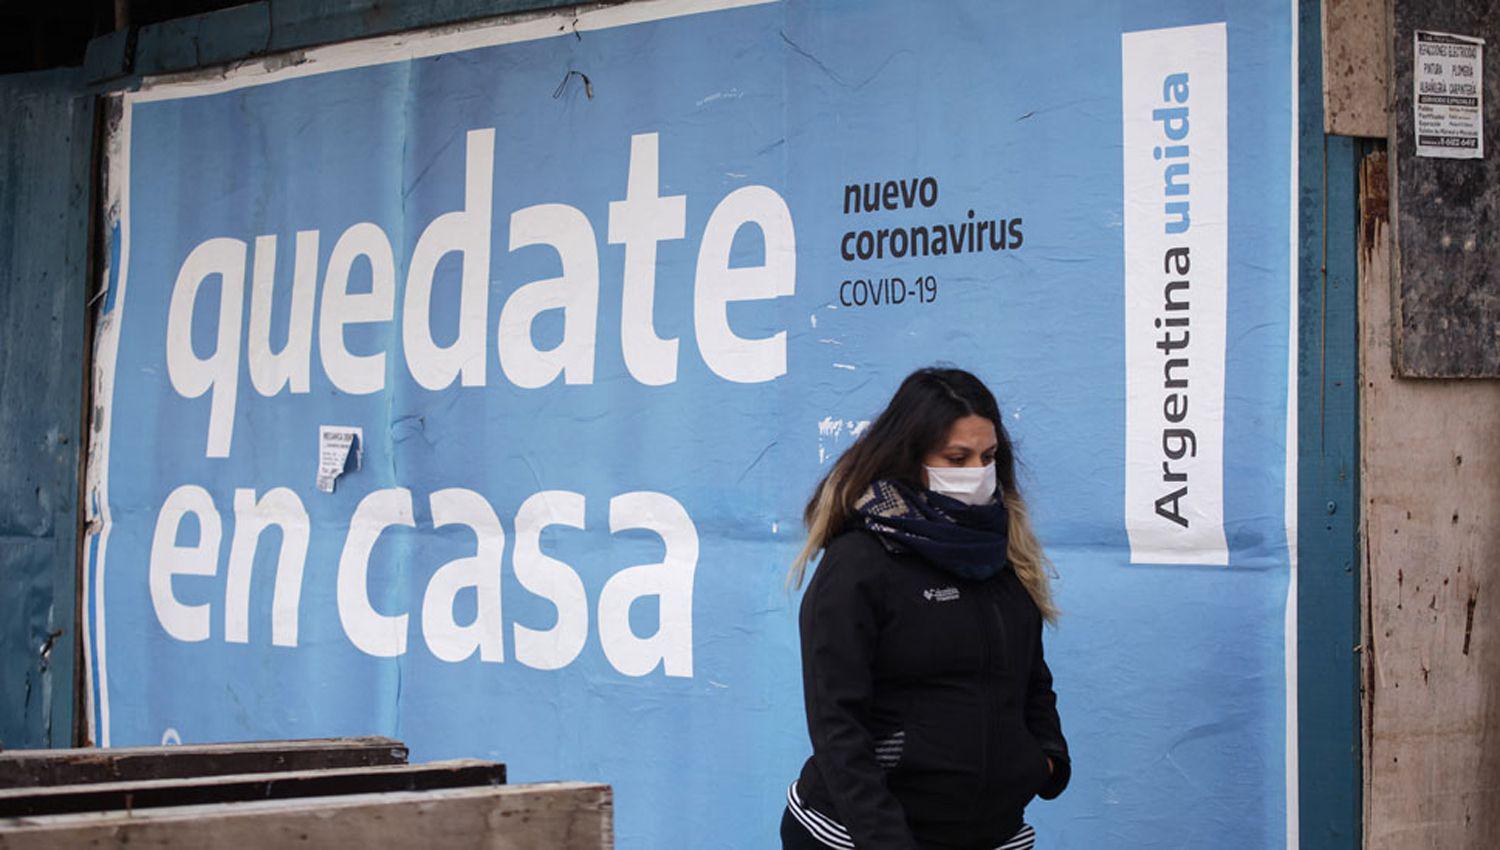 Coronavirus en la Argentina- En las uacuteltimas 24 horas hubo 416 muertes y 29841 contagios